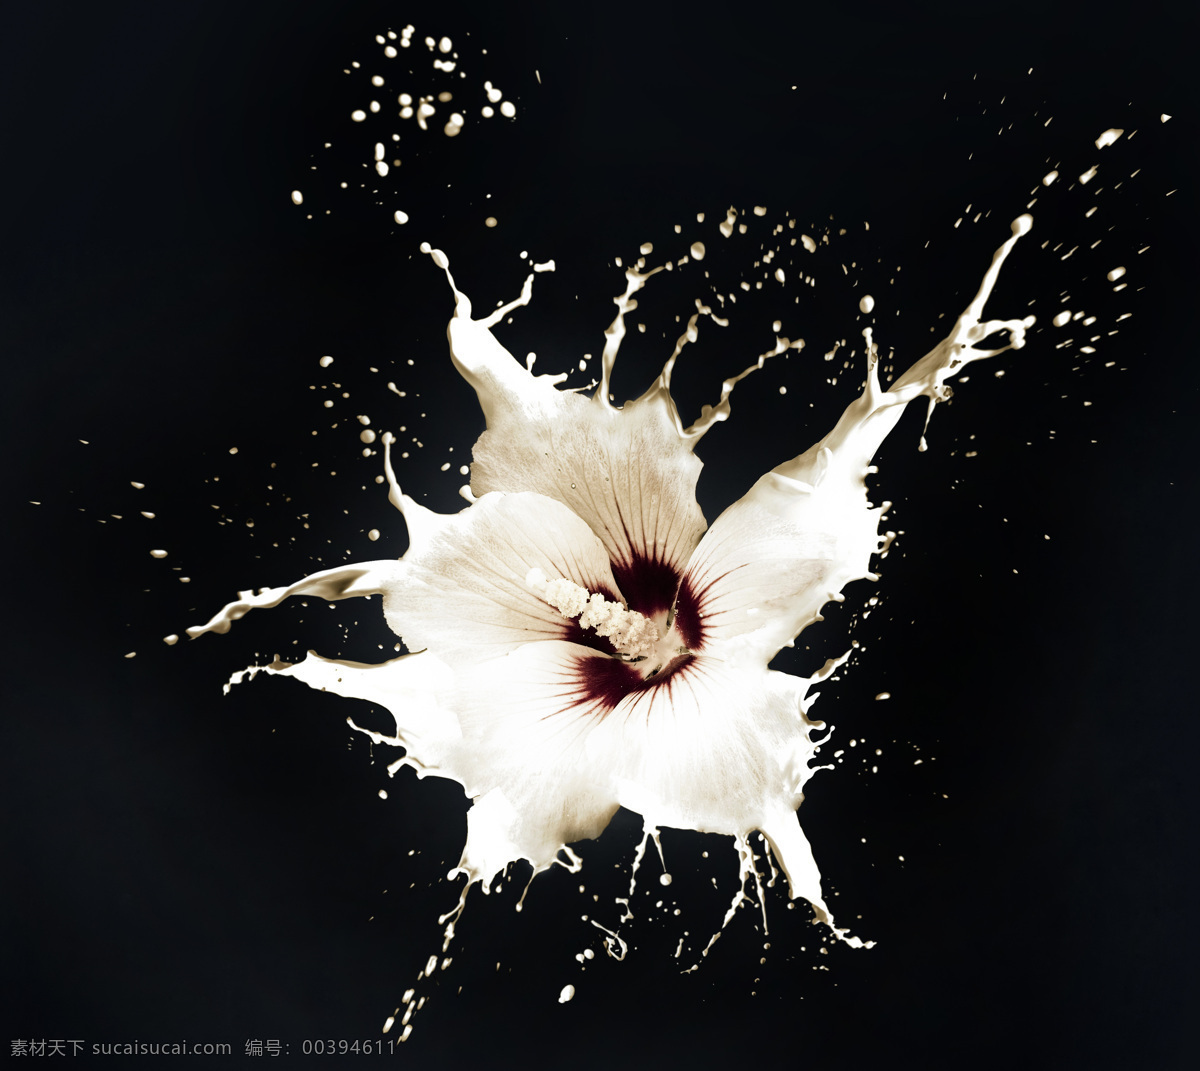 动感 牛奶 花朵 动感牛奶 鲜花 花卉 漂亮花朵 美丽鲜花 鲜花摄影 喷溅 飞溅的牛奶 花草树木 生物世界